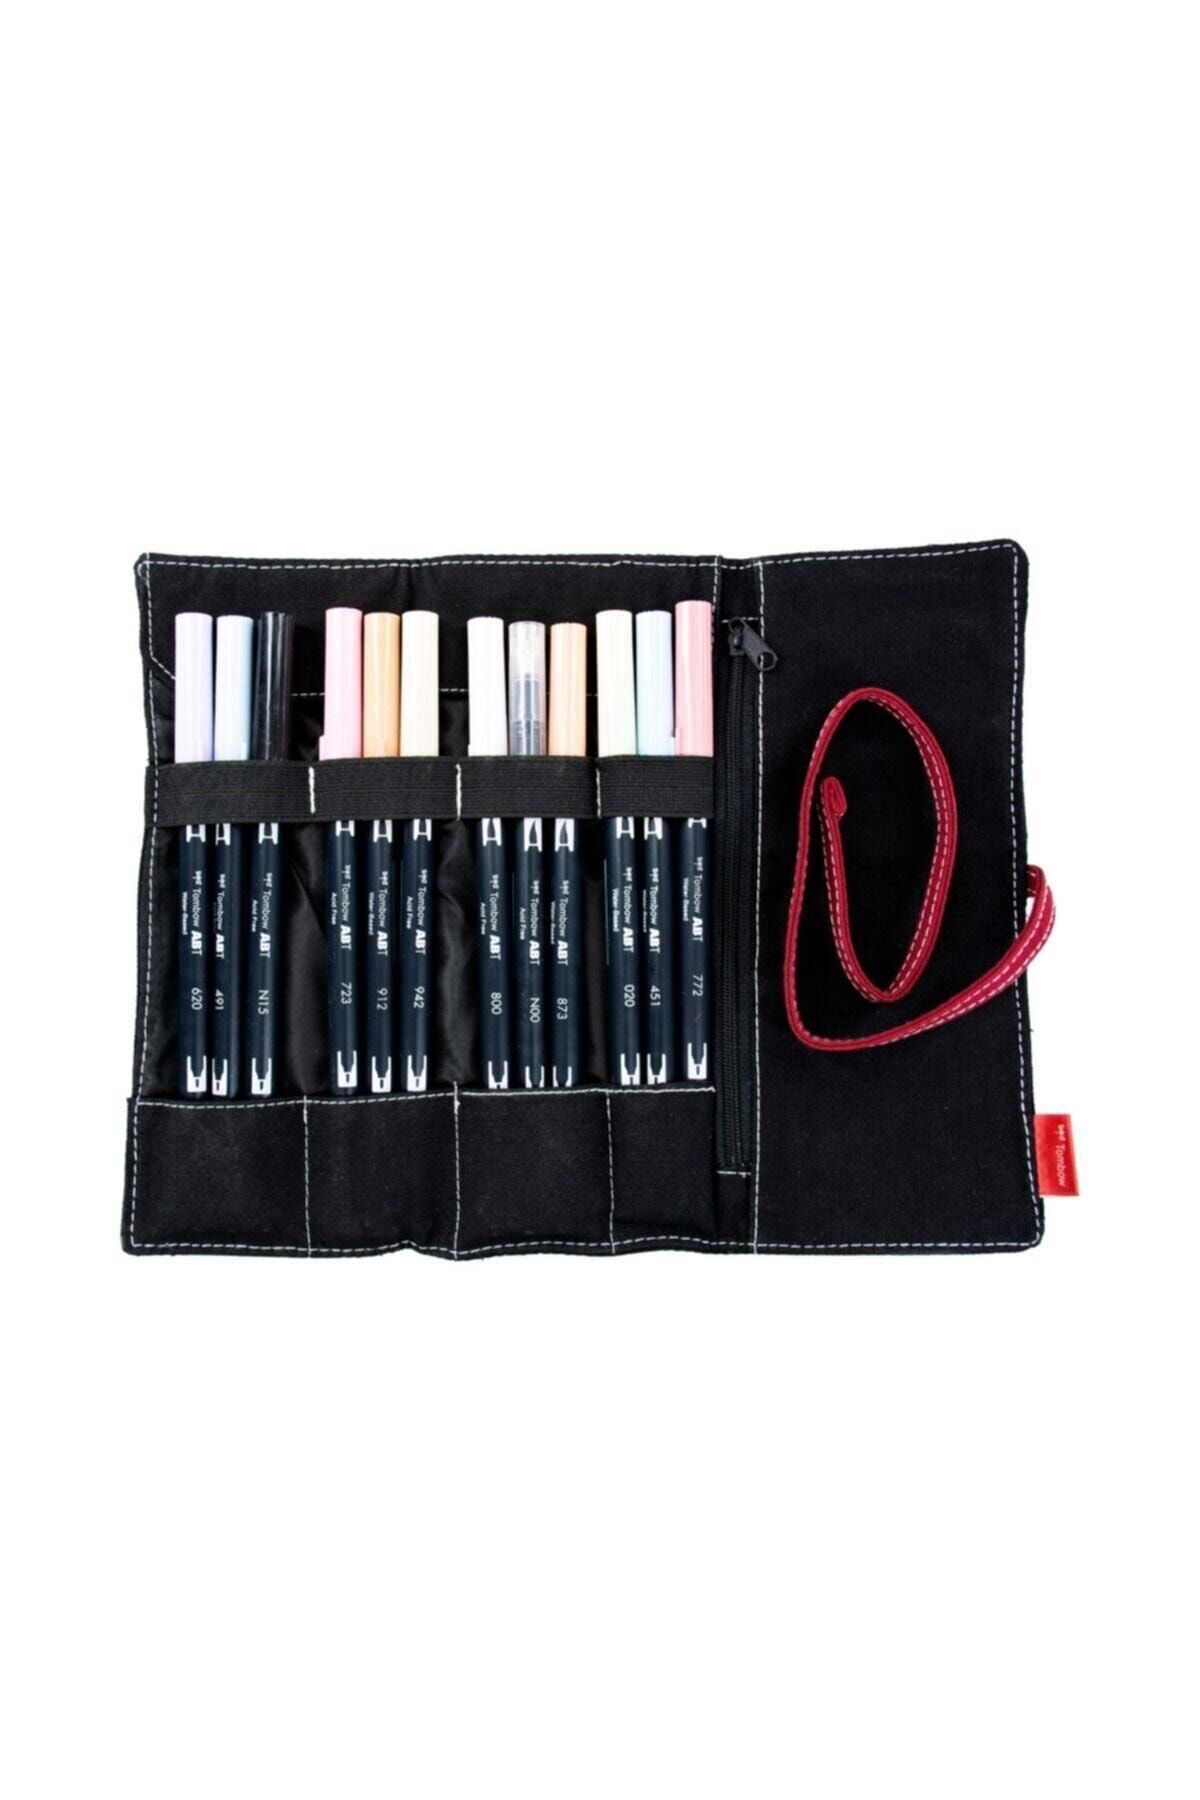 Tombow Dual Brush Pen Fırça Uçlu Kalem Seti 12 Renk Portre Tonlar (rulo Kalemlik Hediyeli)